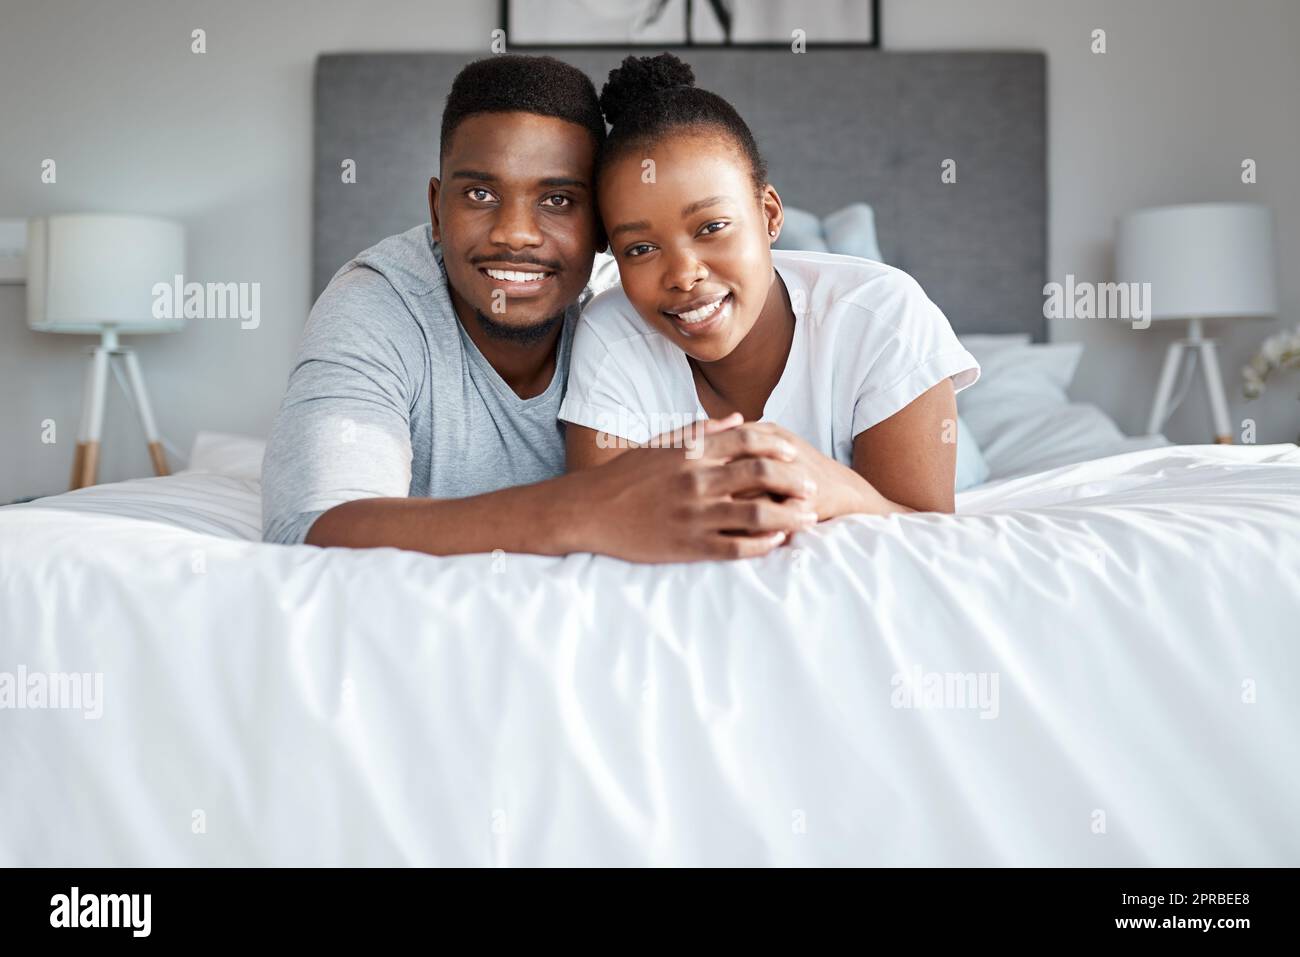 Hielten sich lebenslang an einander fest. Porträt eines liebevollen jungen Paares, das sich zu Hause auf dem Bett entspannt. Stockfoto